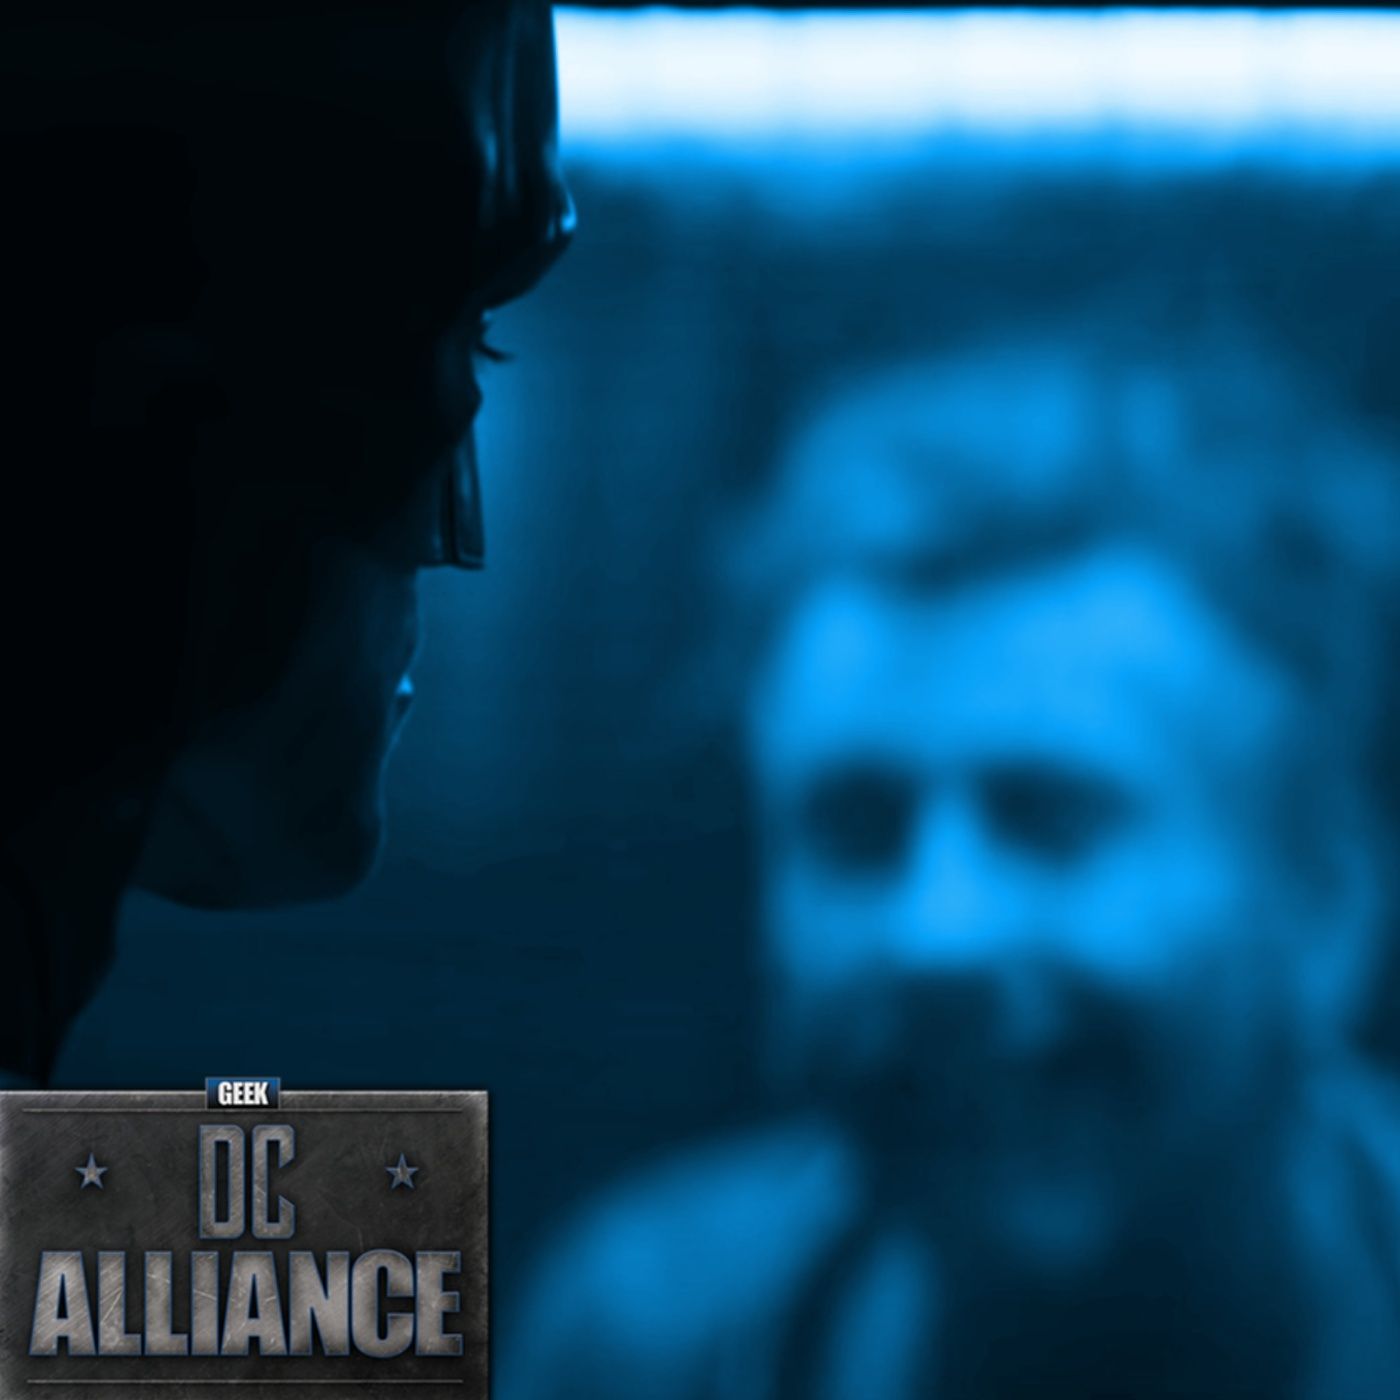 The Batman Deleted Joker Scene : DC Alliance Chapter 104